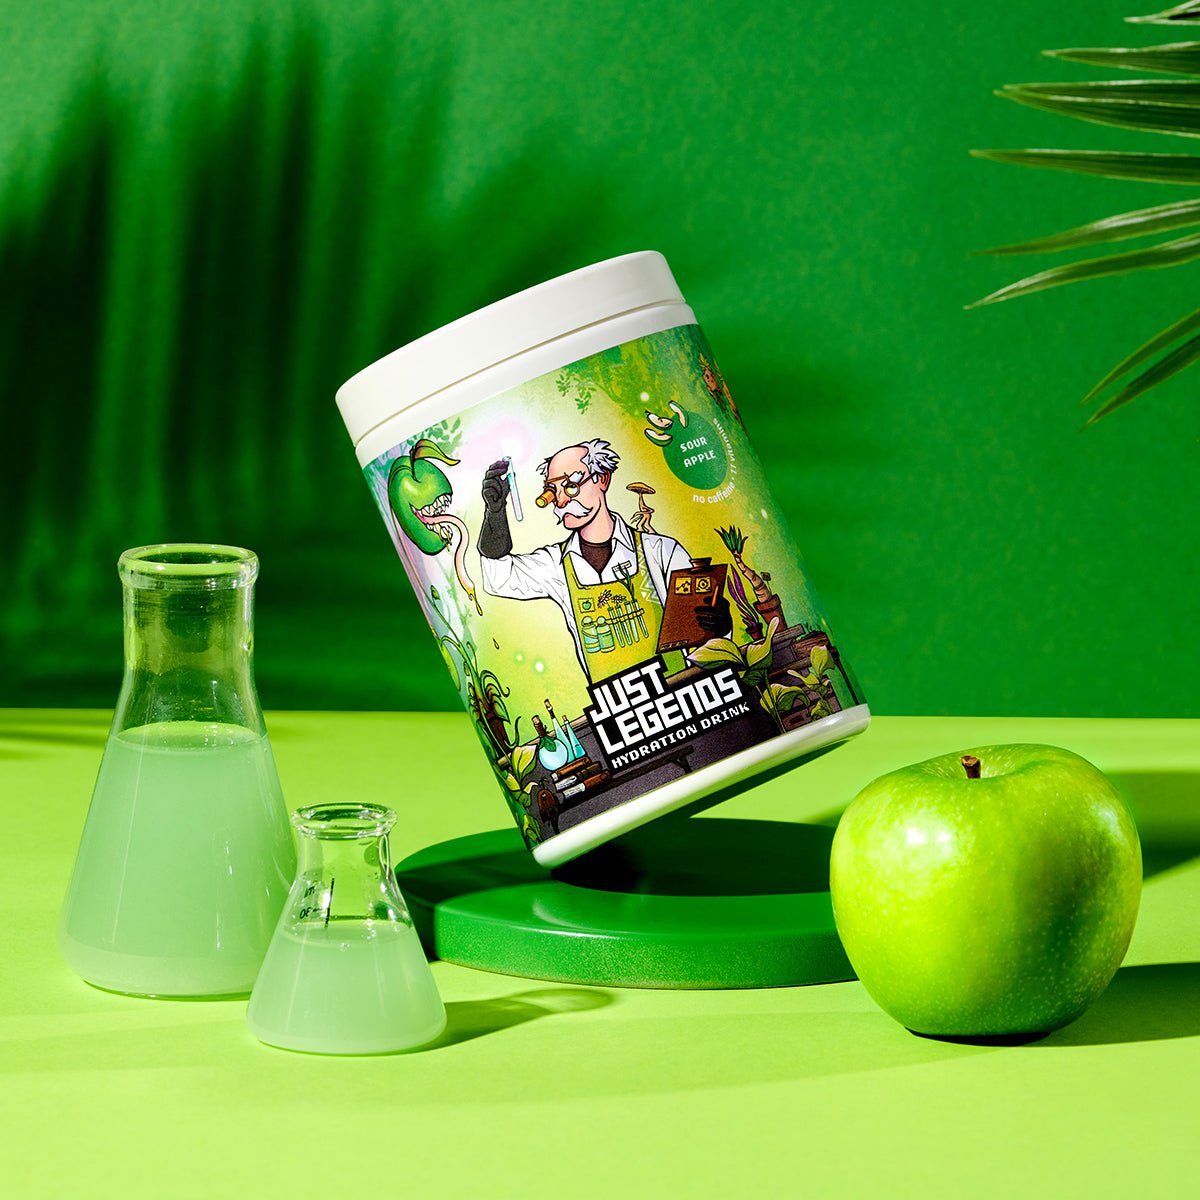 Just Legends Hydration Drink Sour Apple | Funktionaler, veganer Hydration Drink auf Pulverbasis ohne Zucker, mit wenig Kalorien, vielen Vitaminen und natürlichen Aromen.